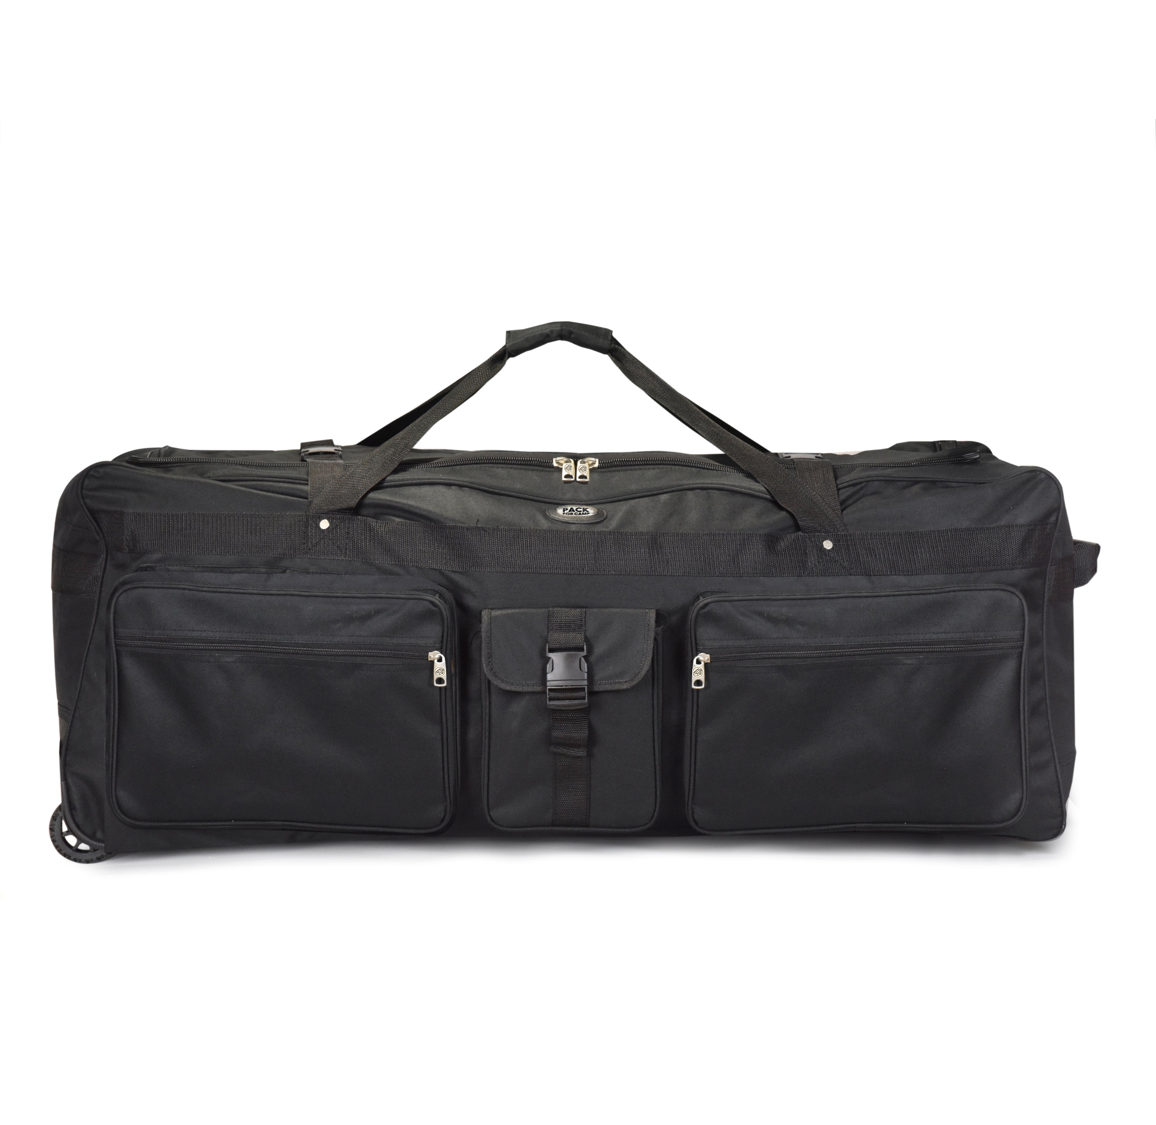 Black Large Travel Duffel Bag